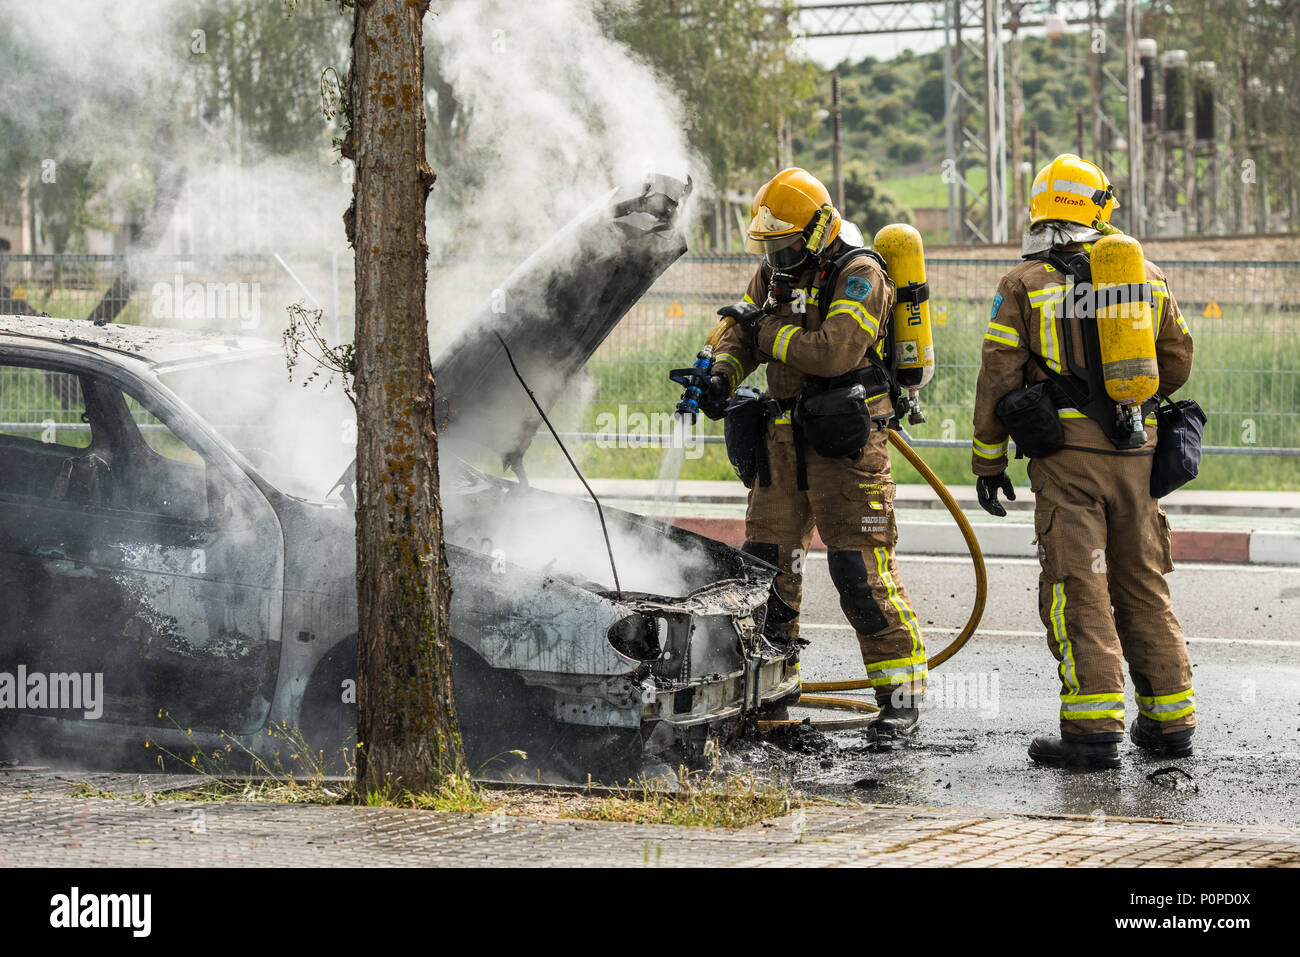 Les pompiers éteindre une voiture qui a brûlé dans une rue de Barcelone. Banque D'Images